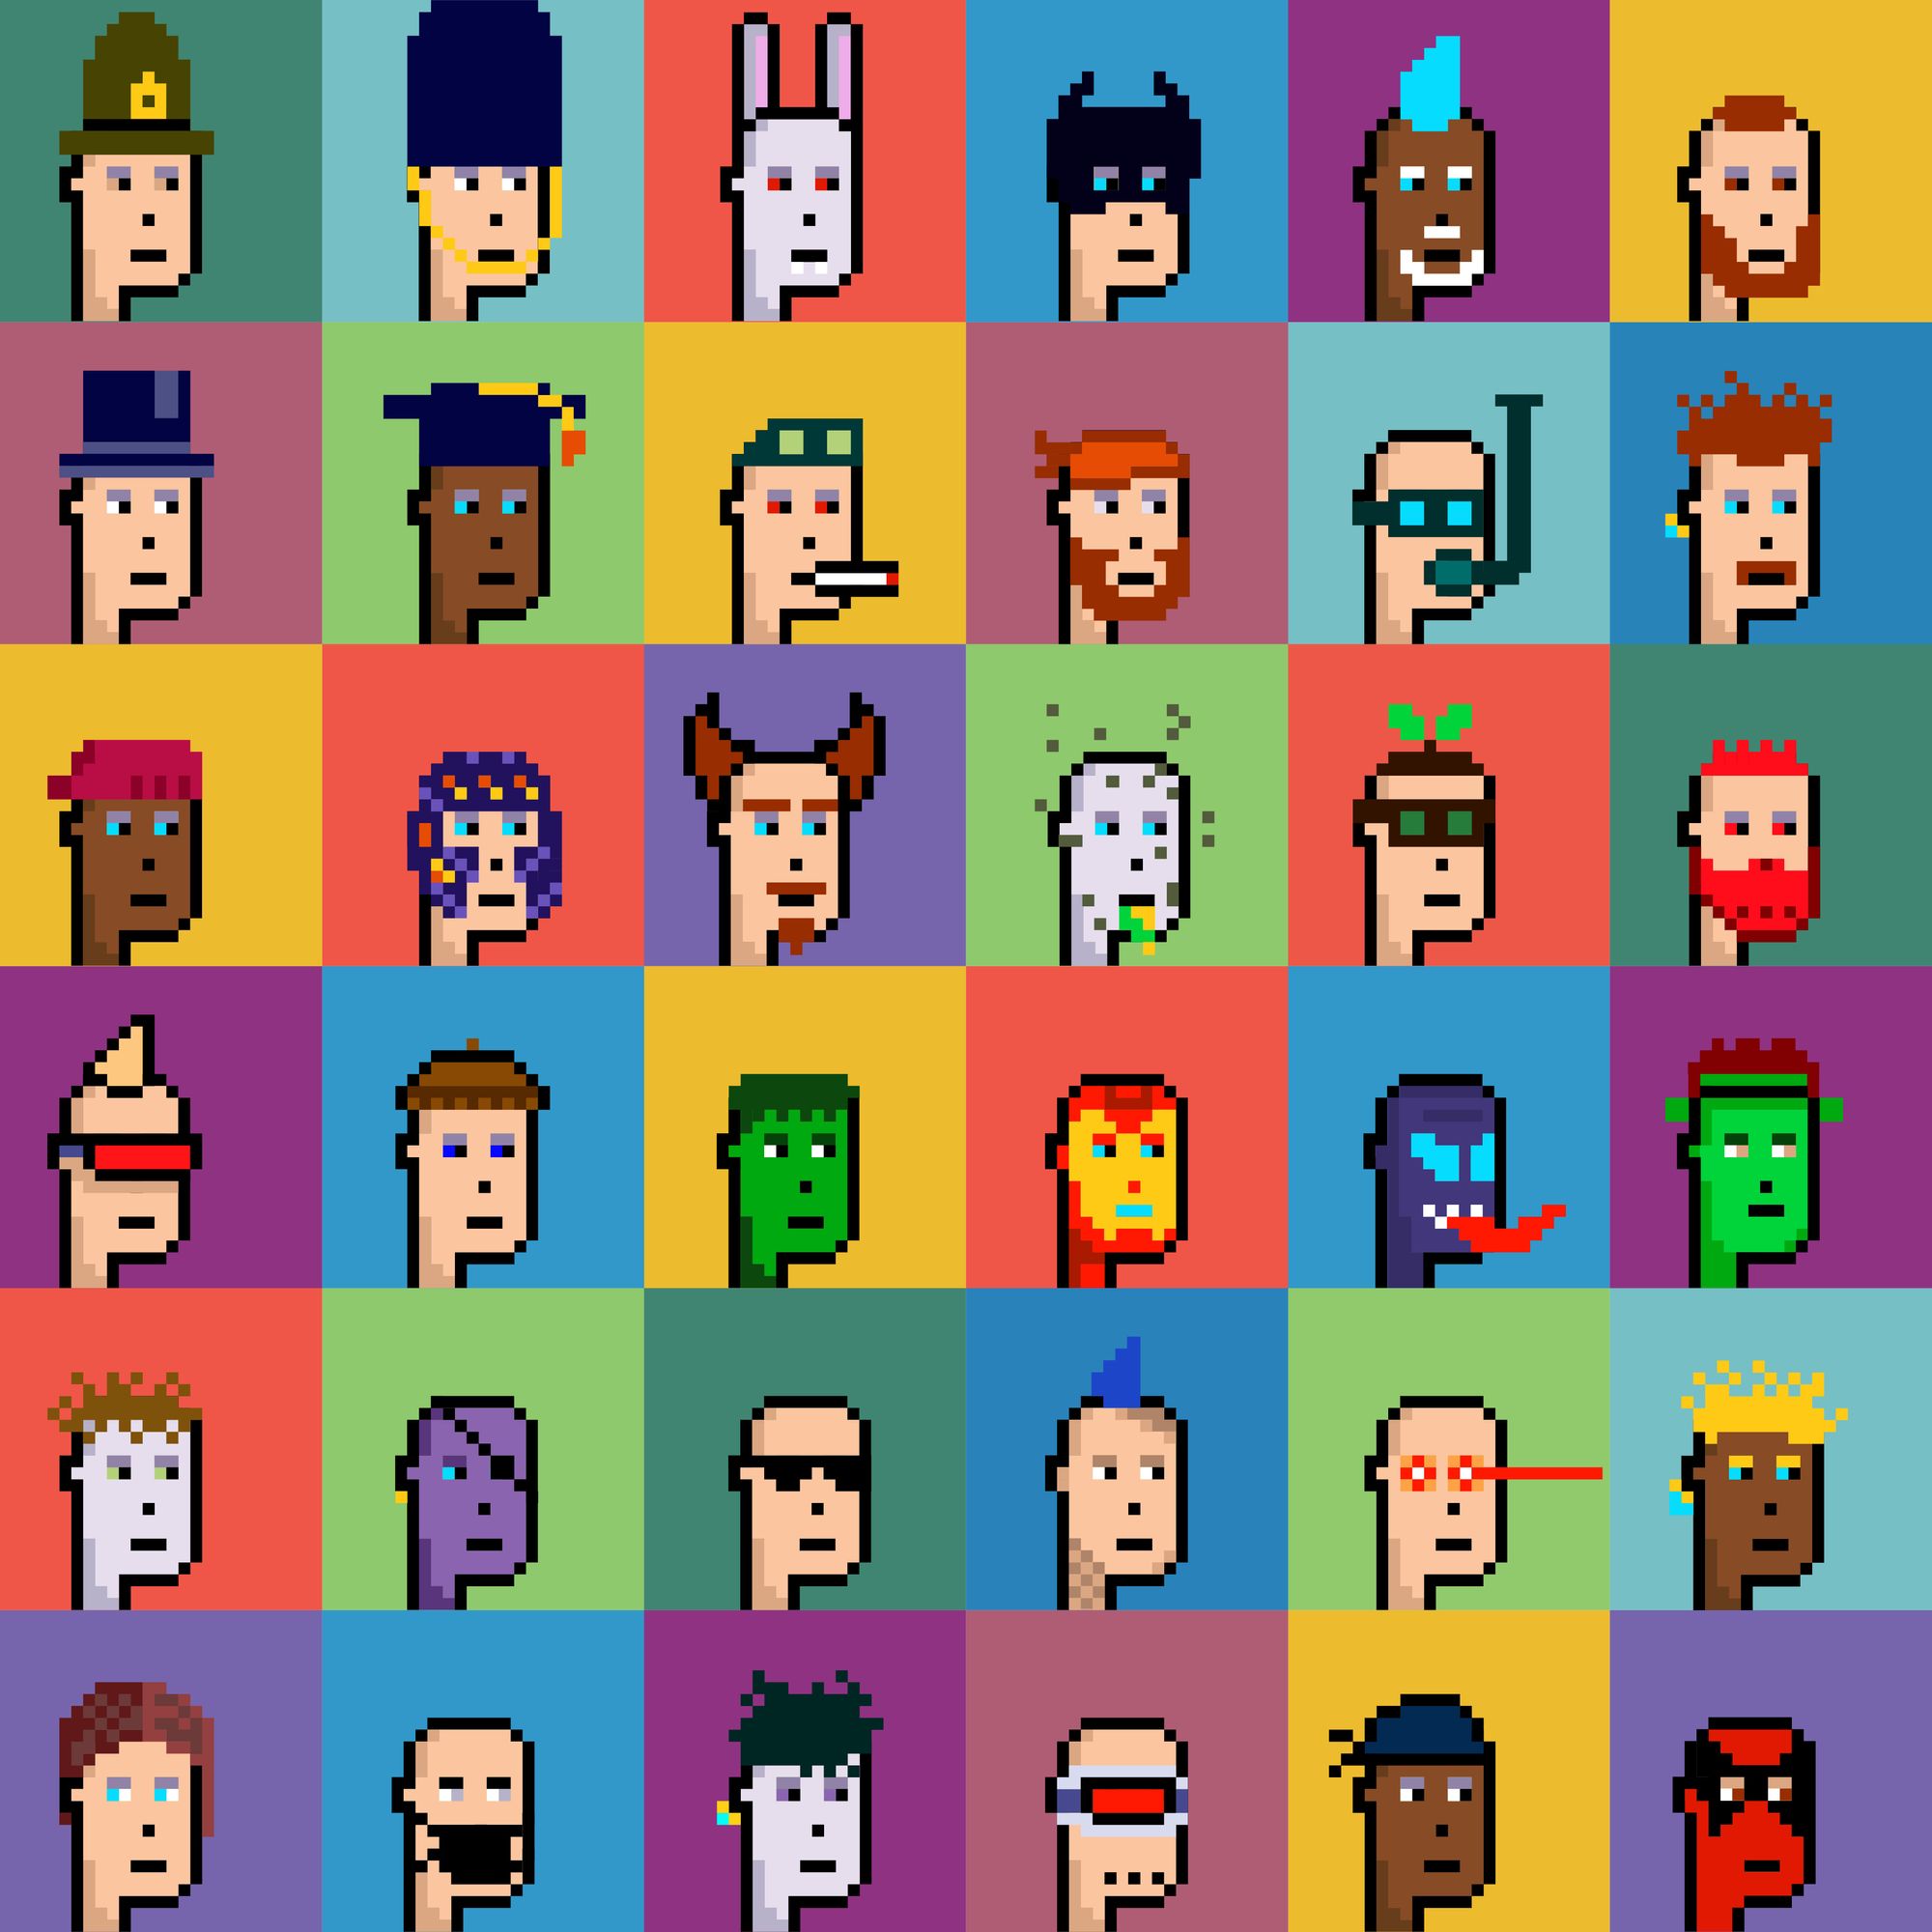 Collection des personnages en NFT de CryptoPunk sur des fonds de différentes couleurs.